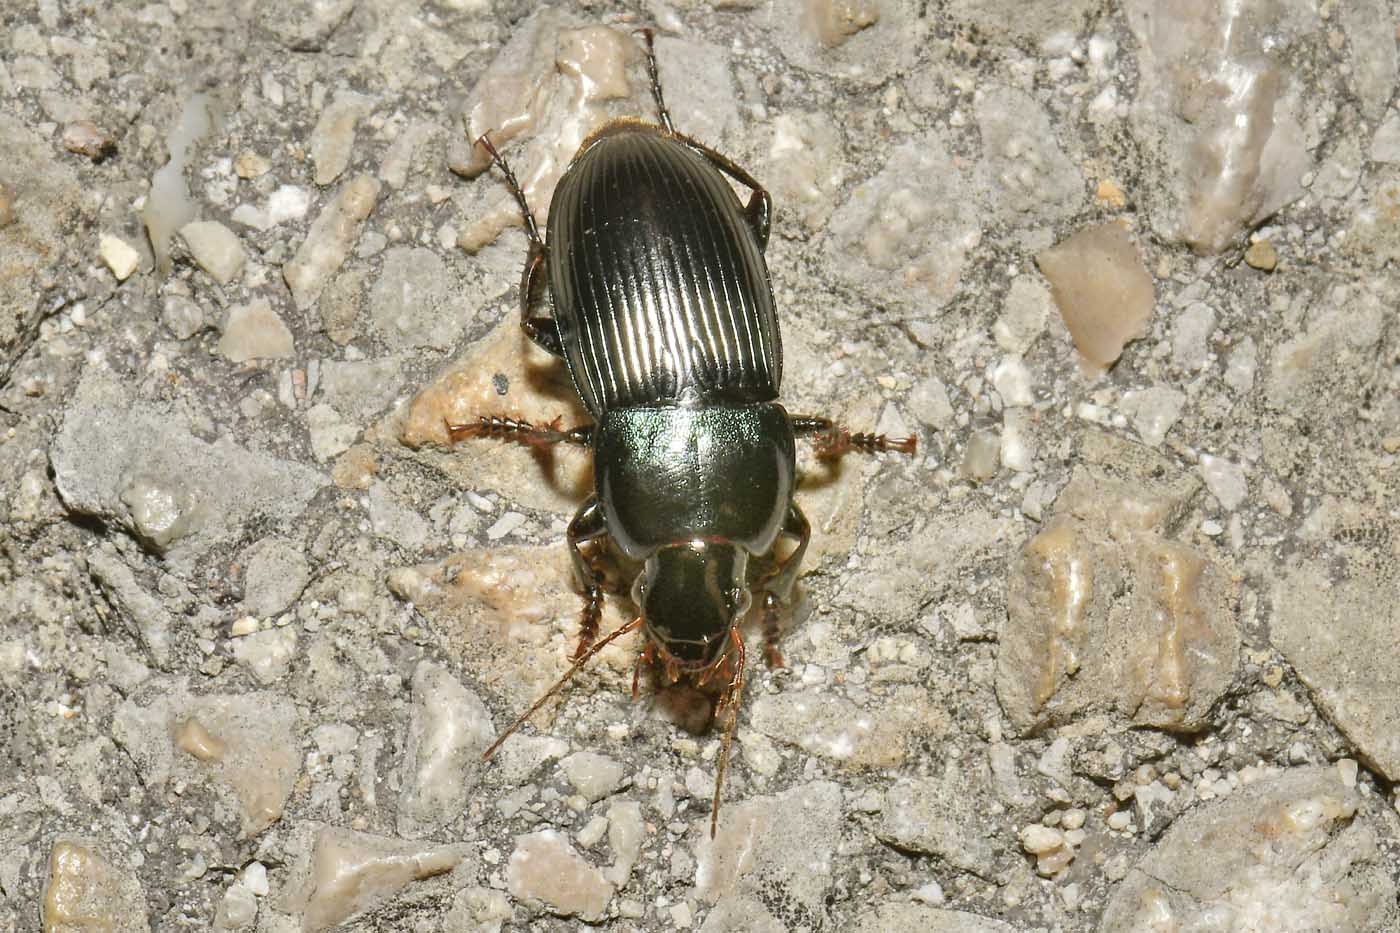 Carabidae: Harpalus dimidiatus? S.